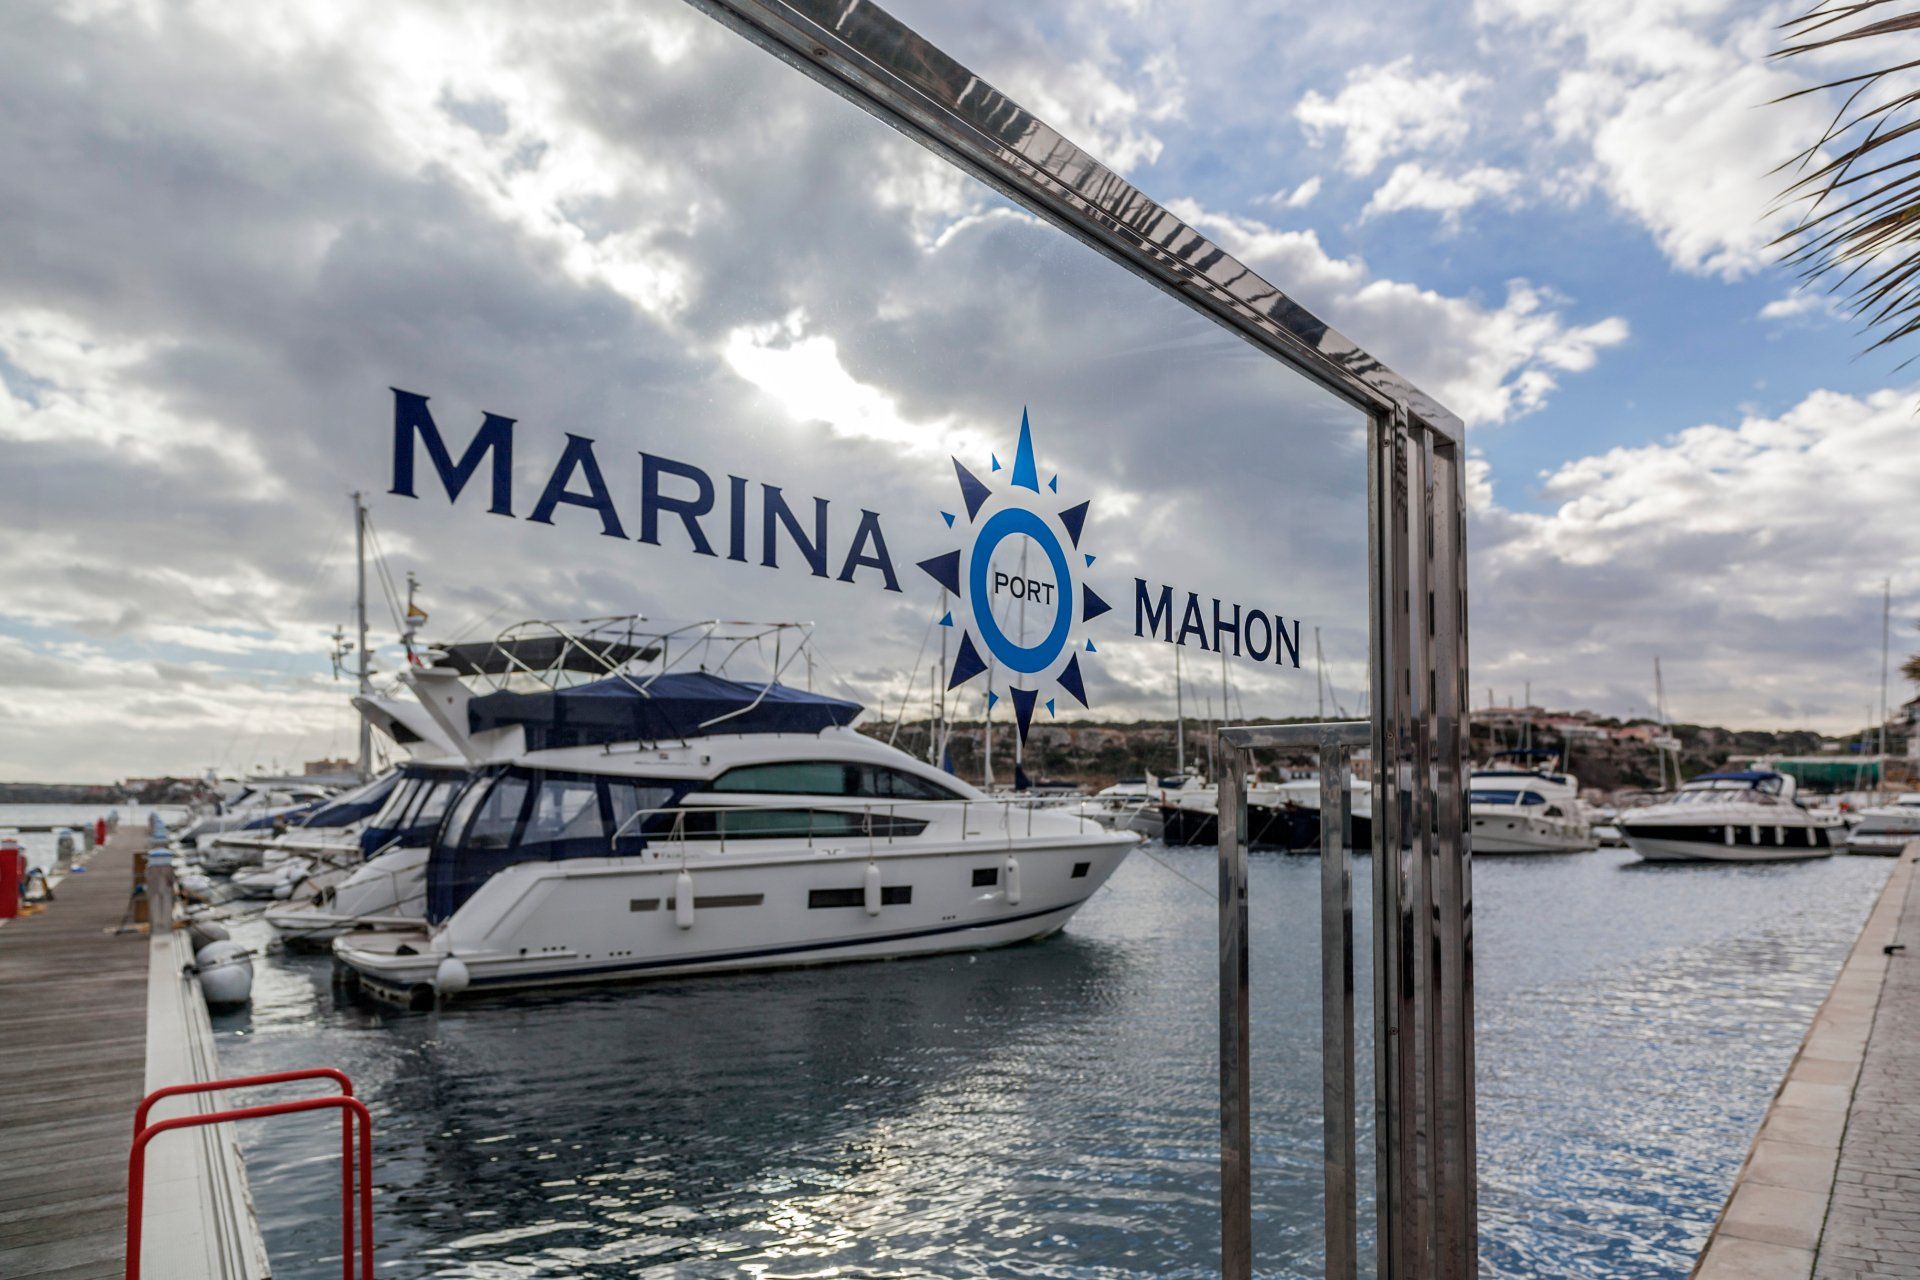 Marina Mahon port in Menorca